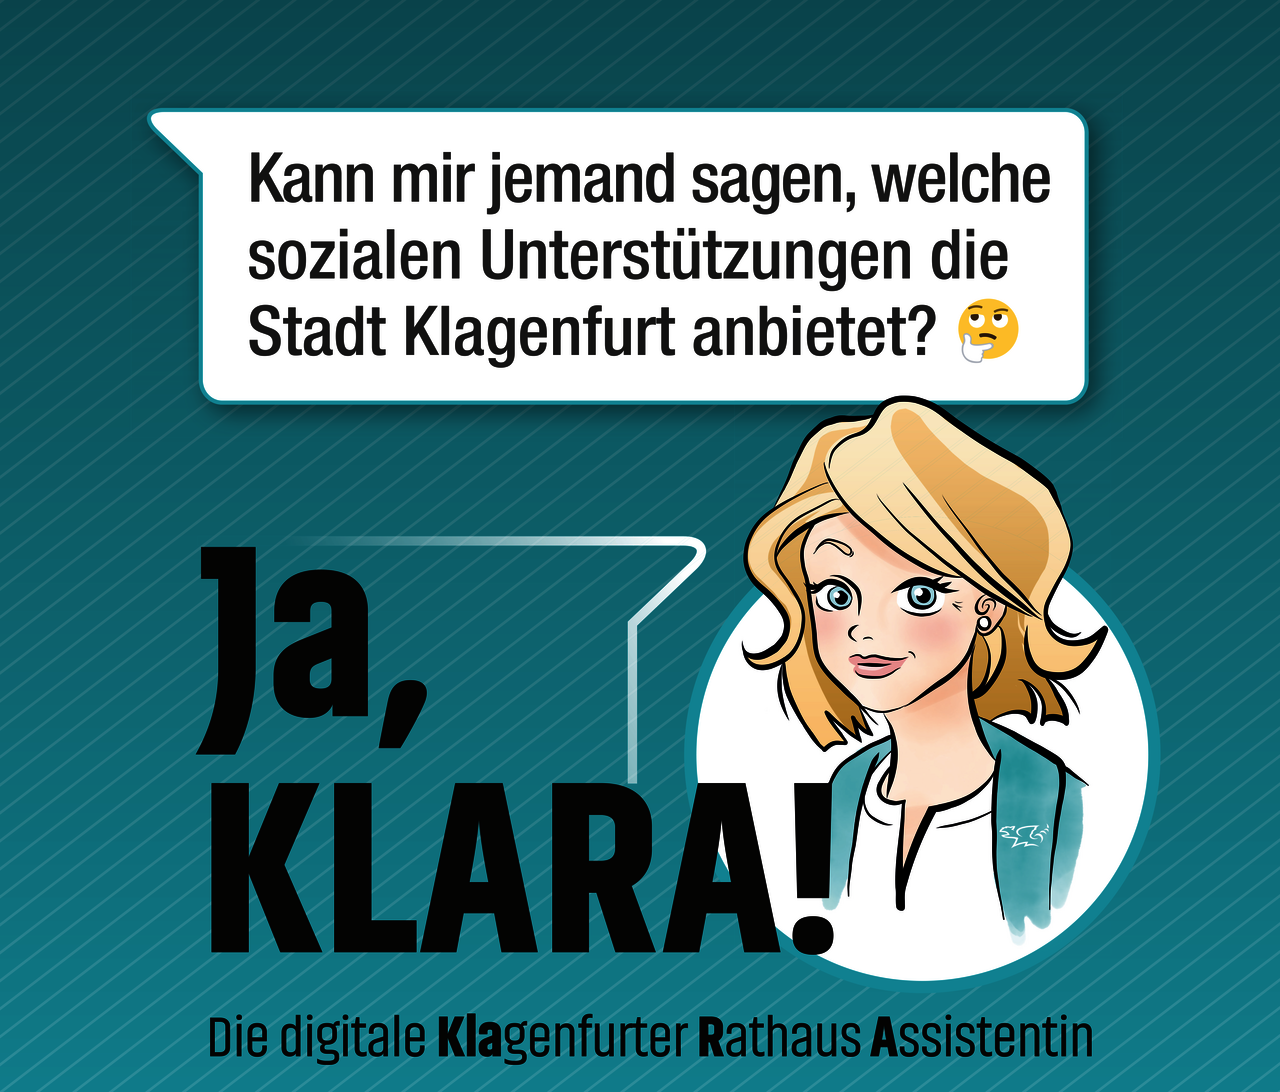 Klara beantwortet gerne Ihre Fragen. Grafik: Major Tom